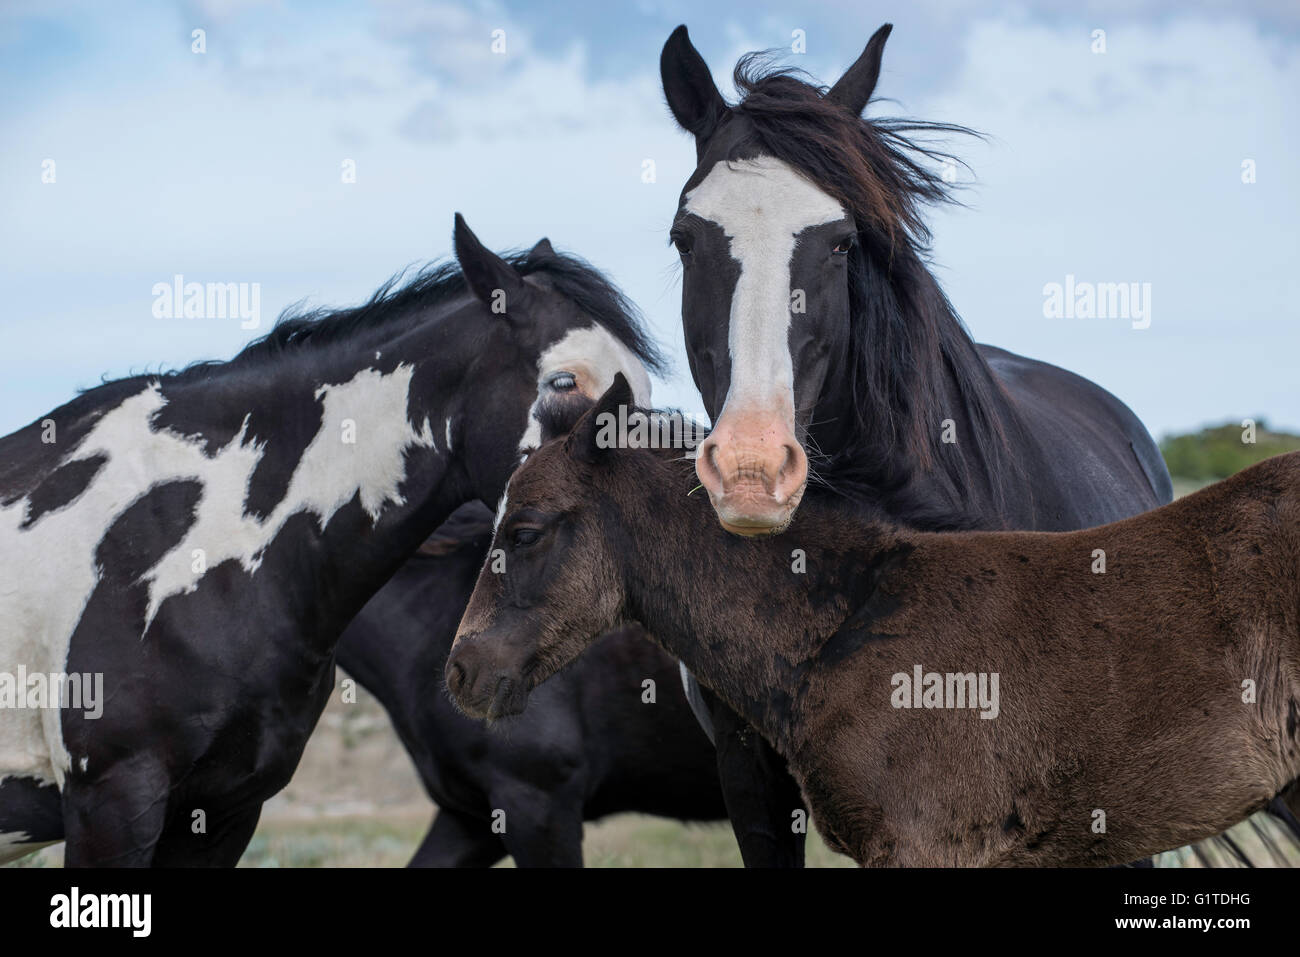 Wild Horse (Equs ferus), Mustang adulte et poulain, poulain Feral, Theodore Roosevelt National Park, N. Dakota, USA Banque D'Images